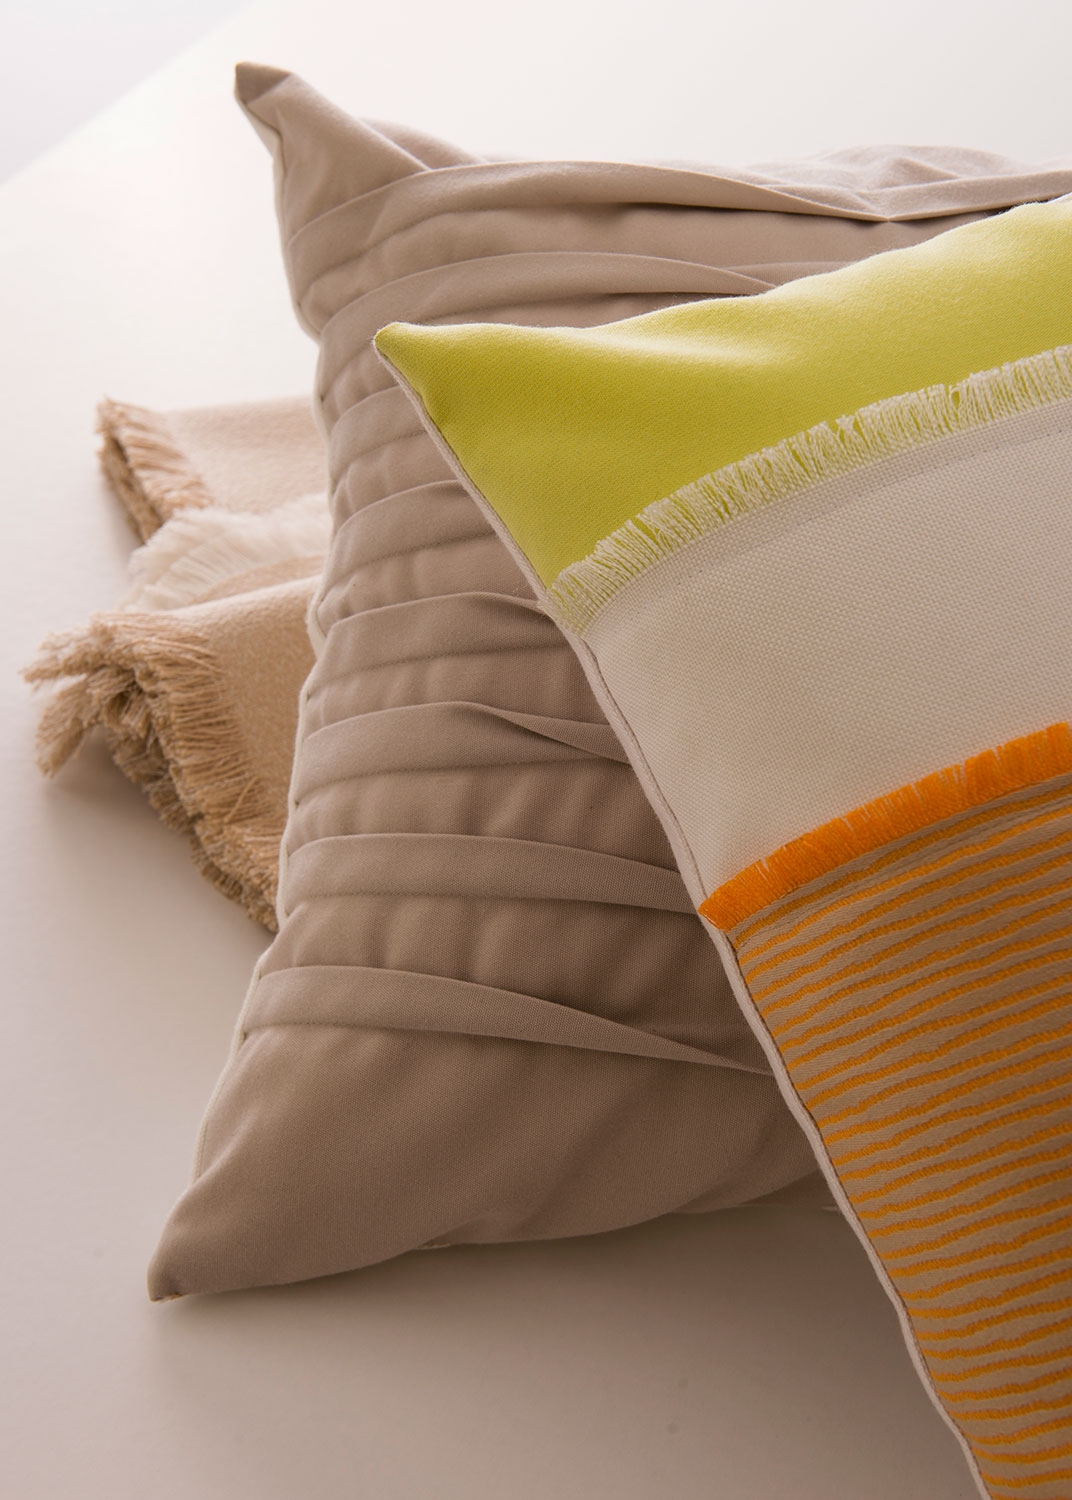 Ingrandimento di cuscini di colore neutro con accenti arancio e giallo limone.